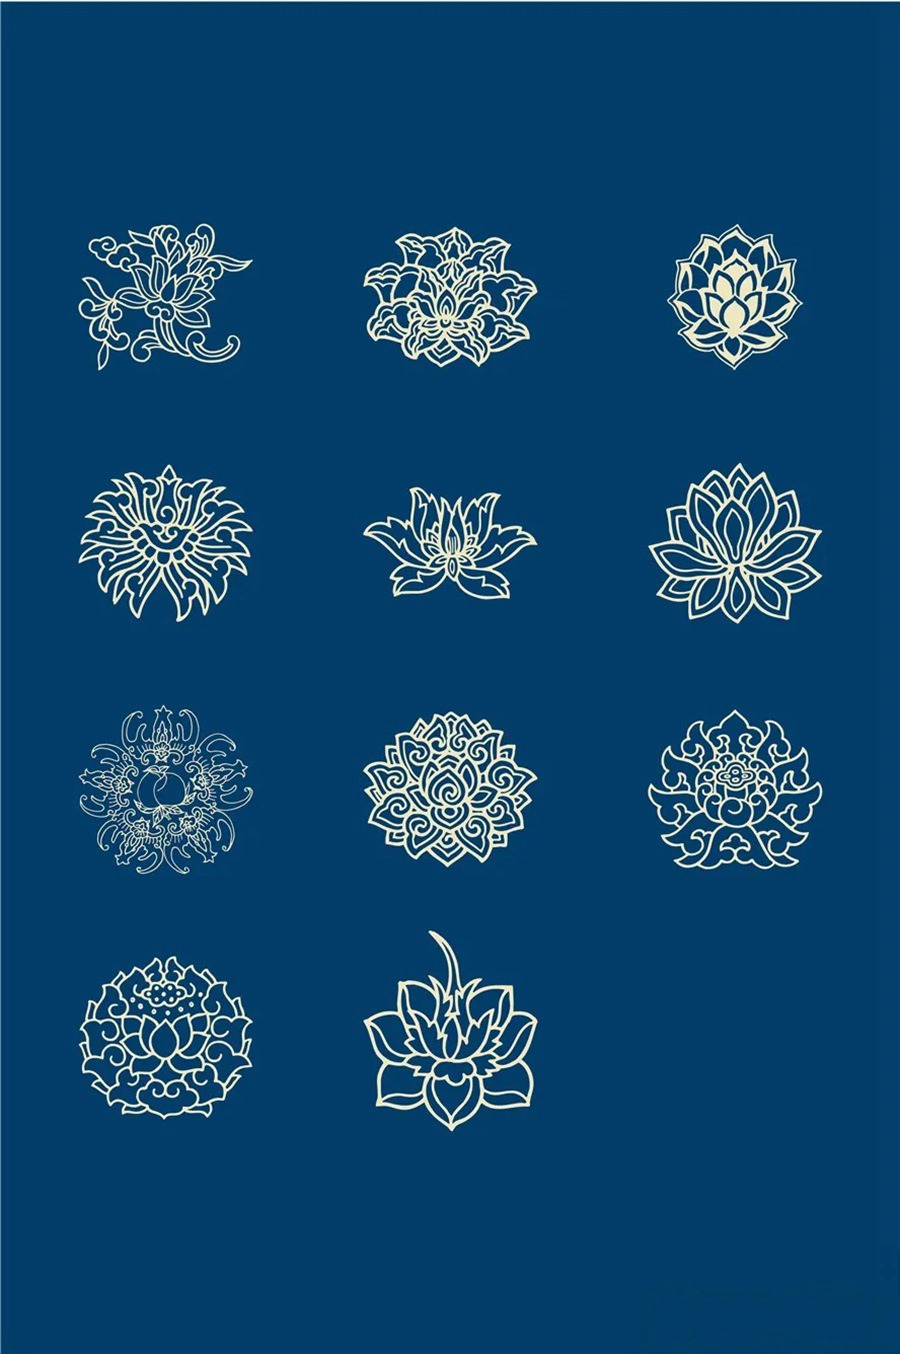 中国风传统古典青花瓷图案花纹图形纹样AI矢量模板花纹设计素材 图片素材 第17张